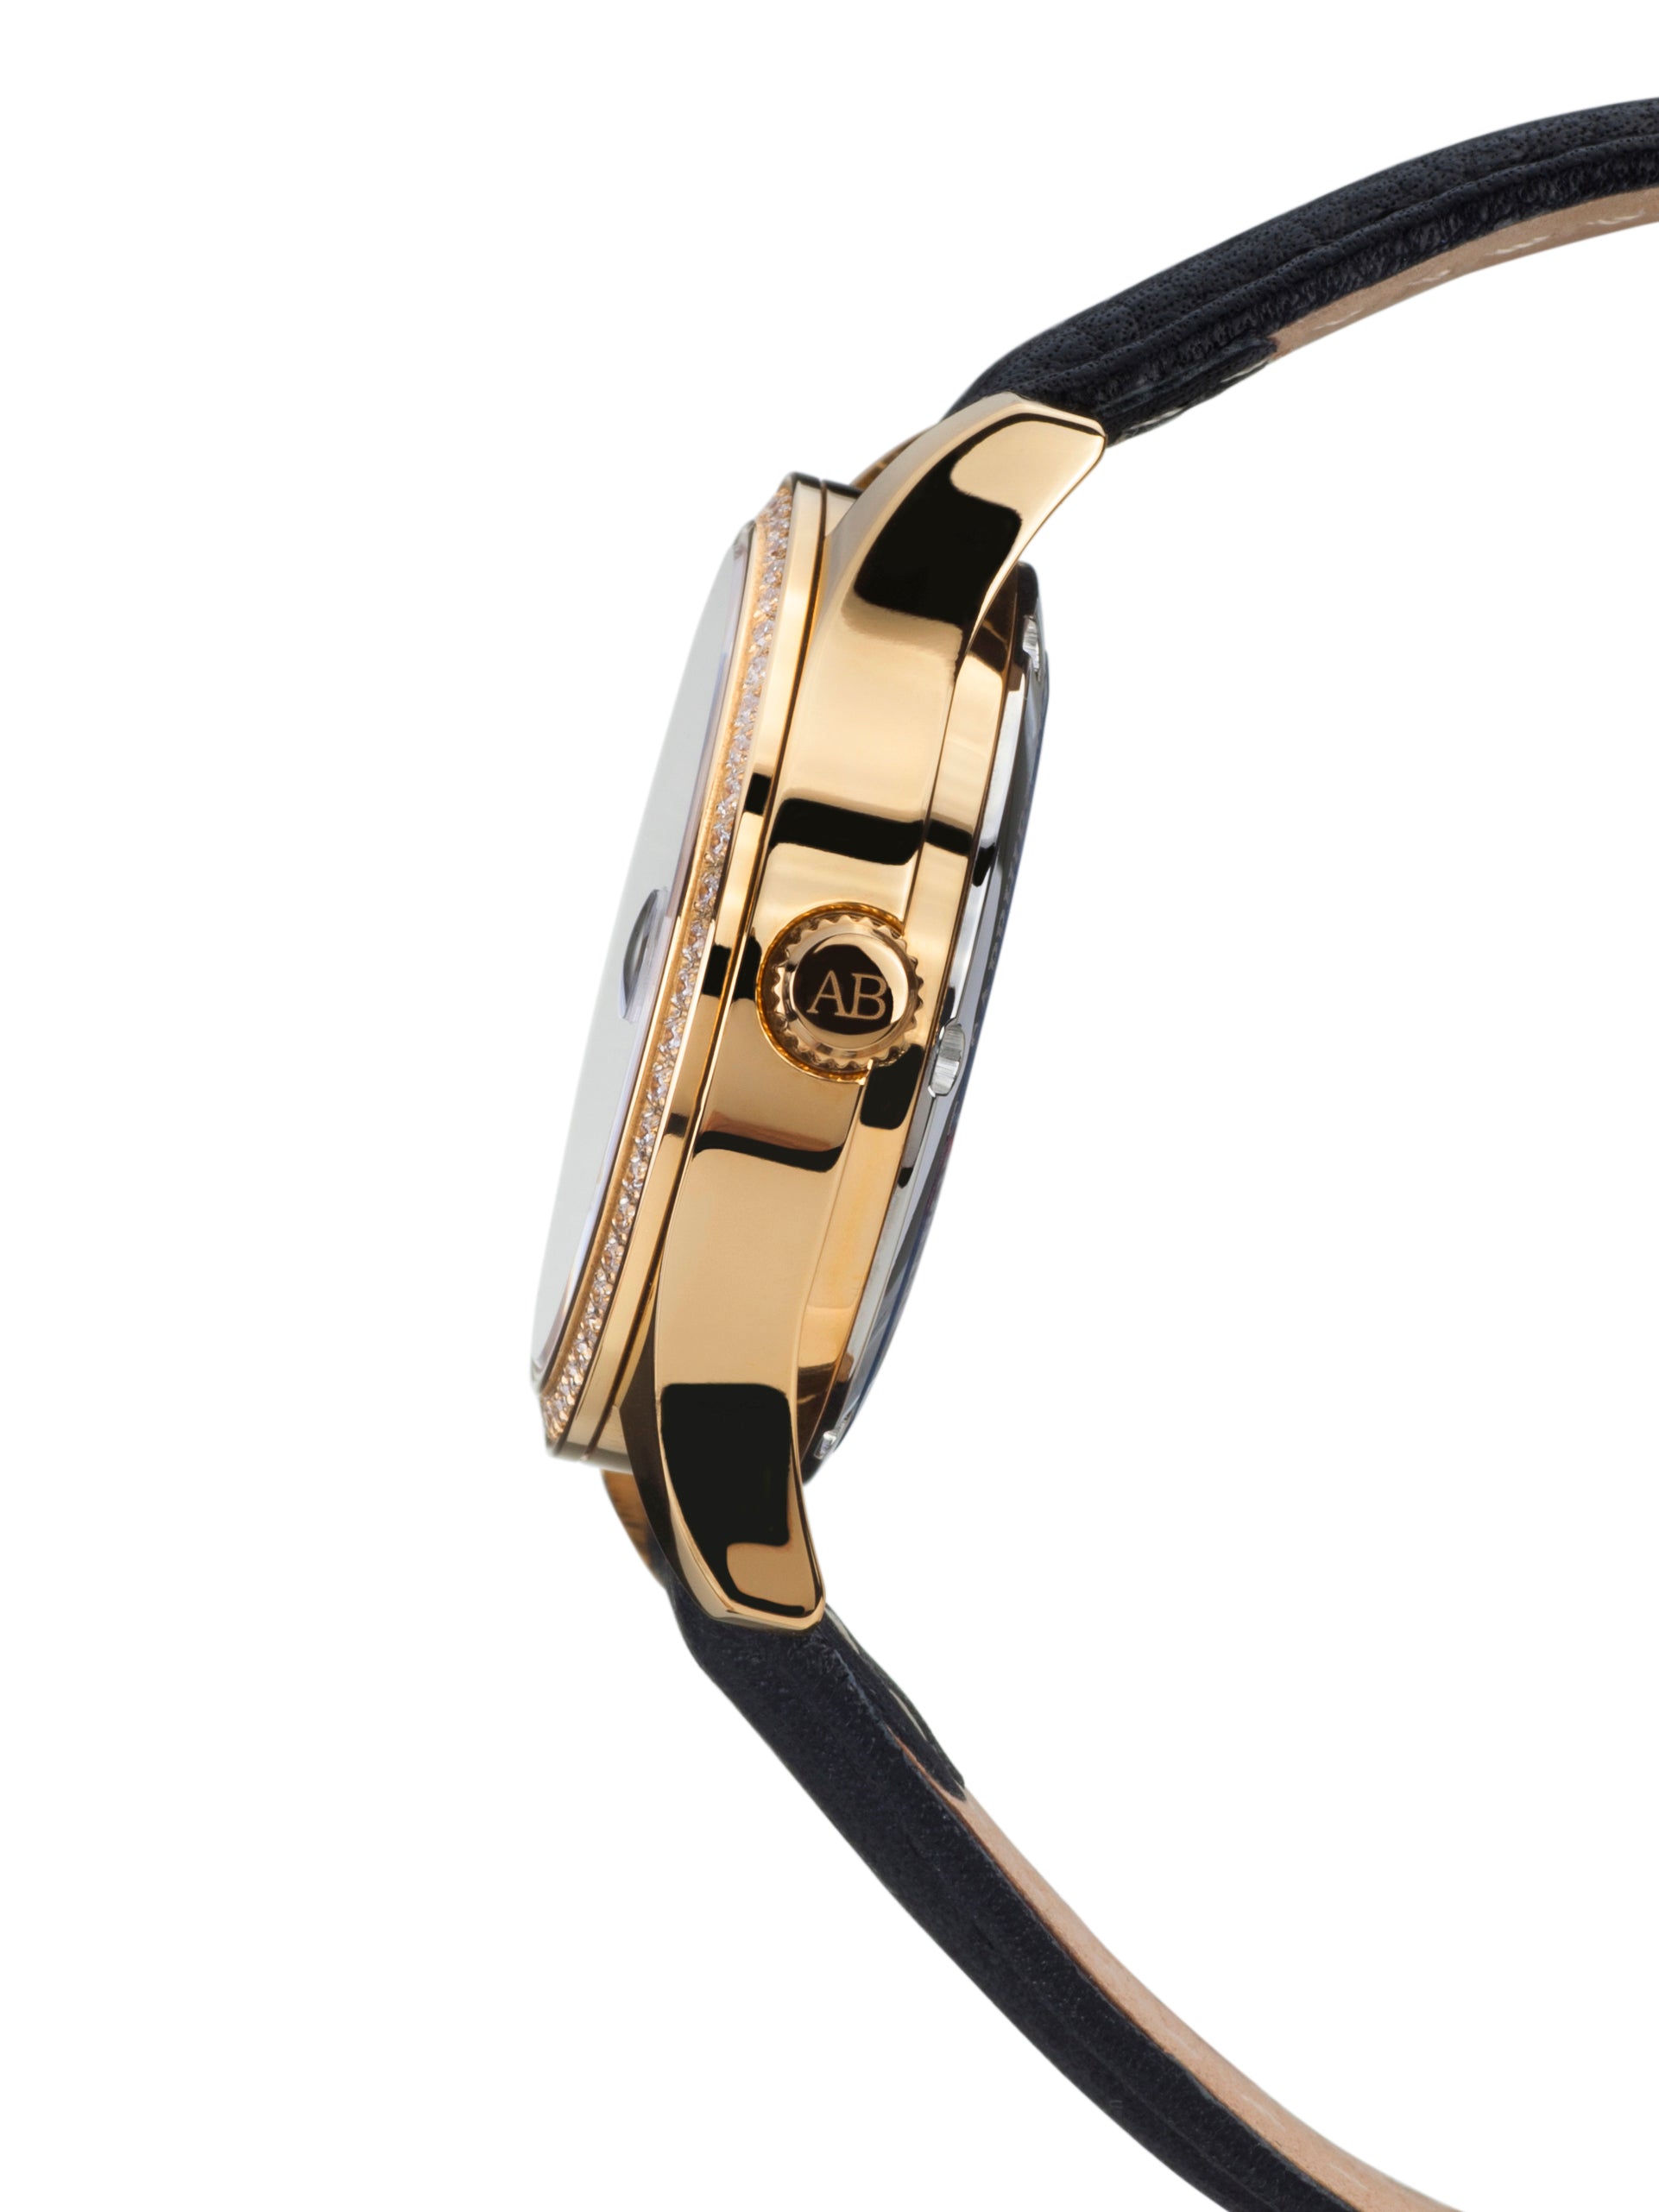 Automatic watches — Déméter — André Belfort — gold schwarz Leder